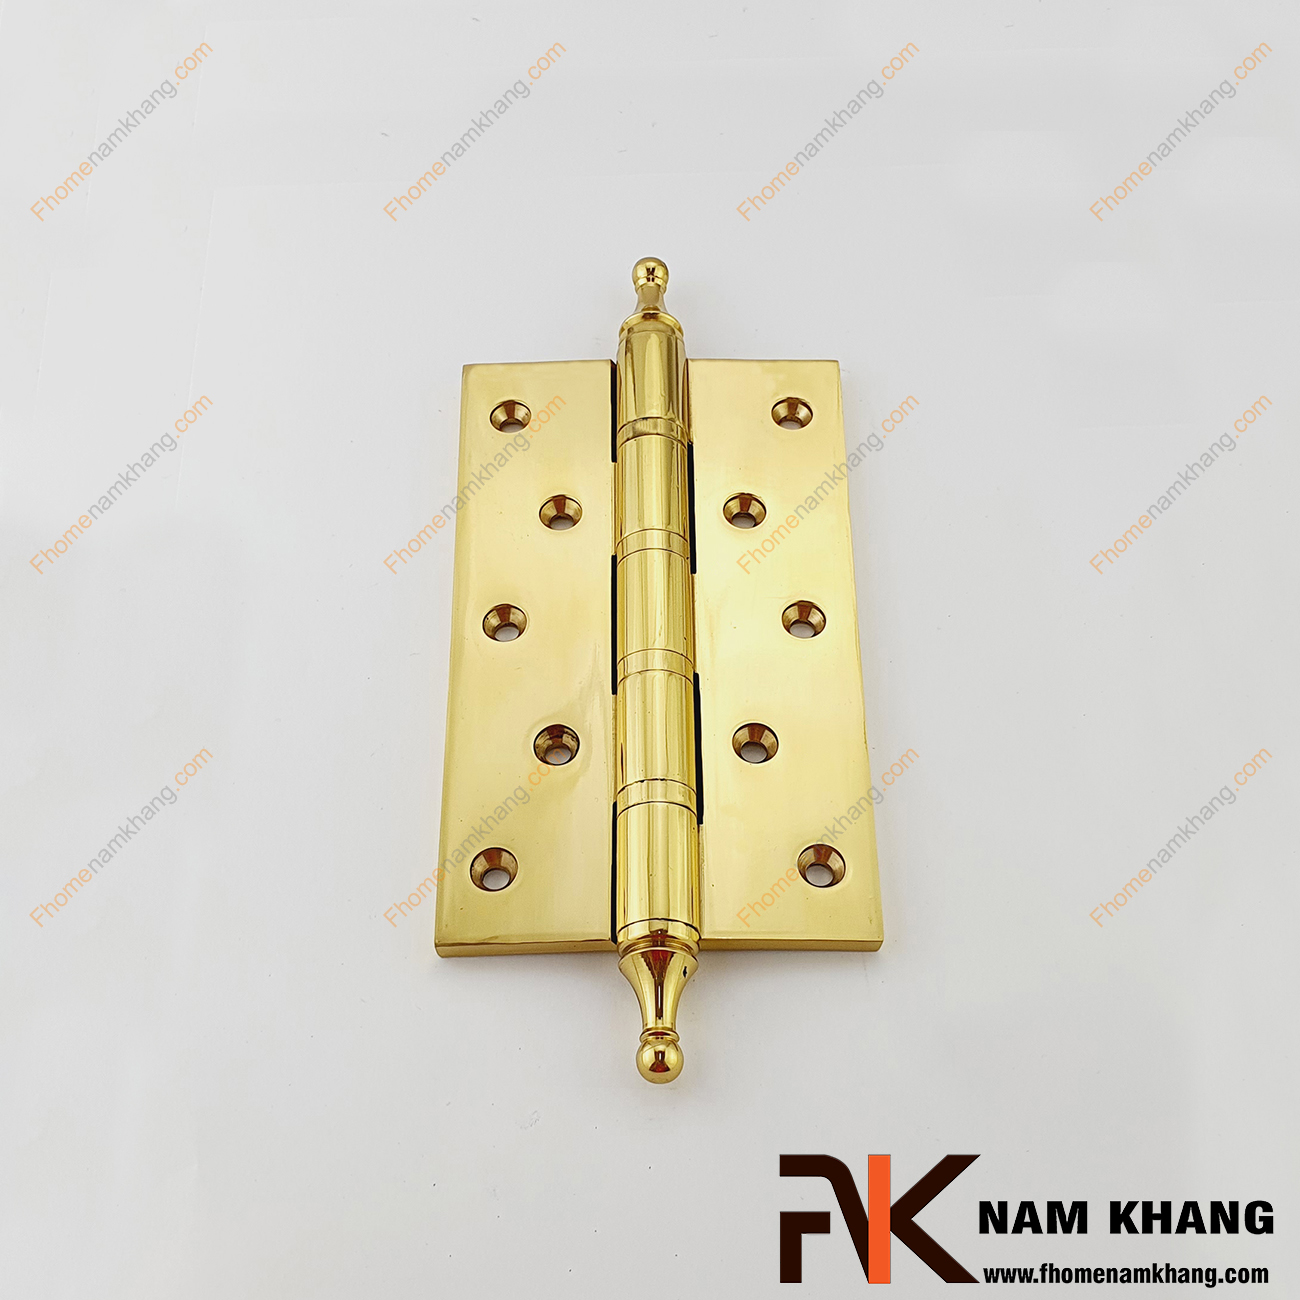 Bản lề cửa màu đồng vàng NK308-13FDO được sản xuất từ đồng cao cấp, có kết cấu bền vững và độ bền rất cao.  Bề mặt được xử lý kỹ thuật cao, bo tròn các góc tinh tế, bản lề mang màu vàng sáng đẹp, làm tăng giá trị thẩm mĩ. 